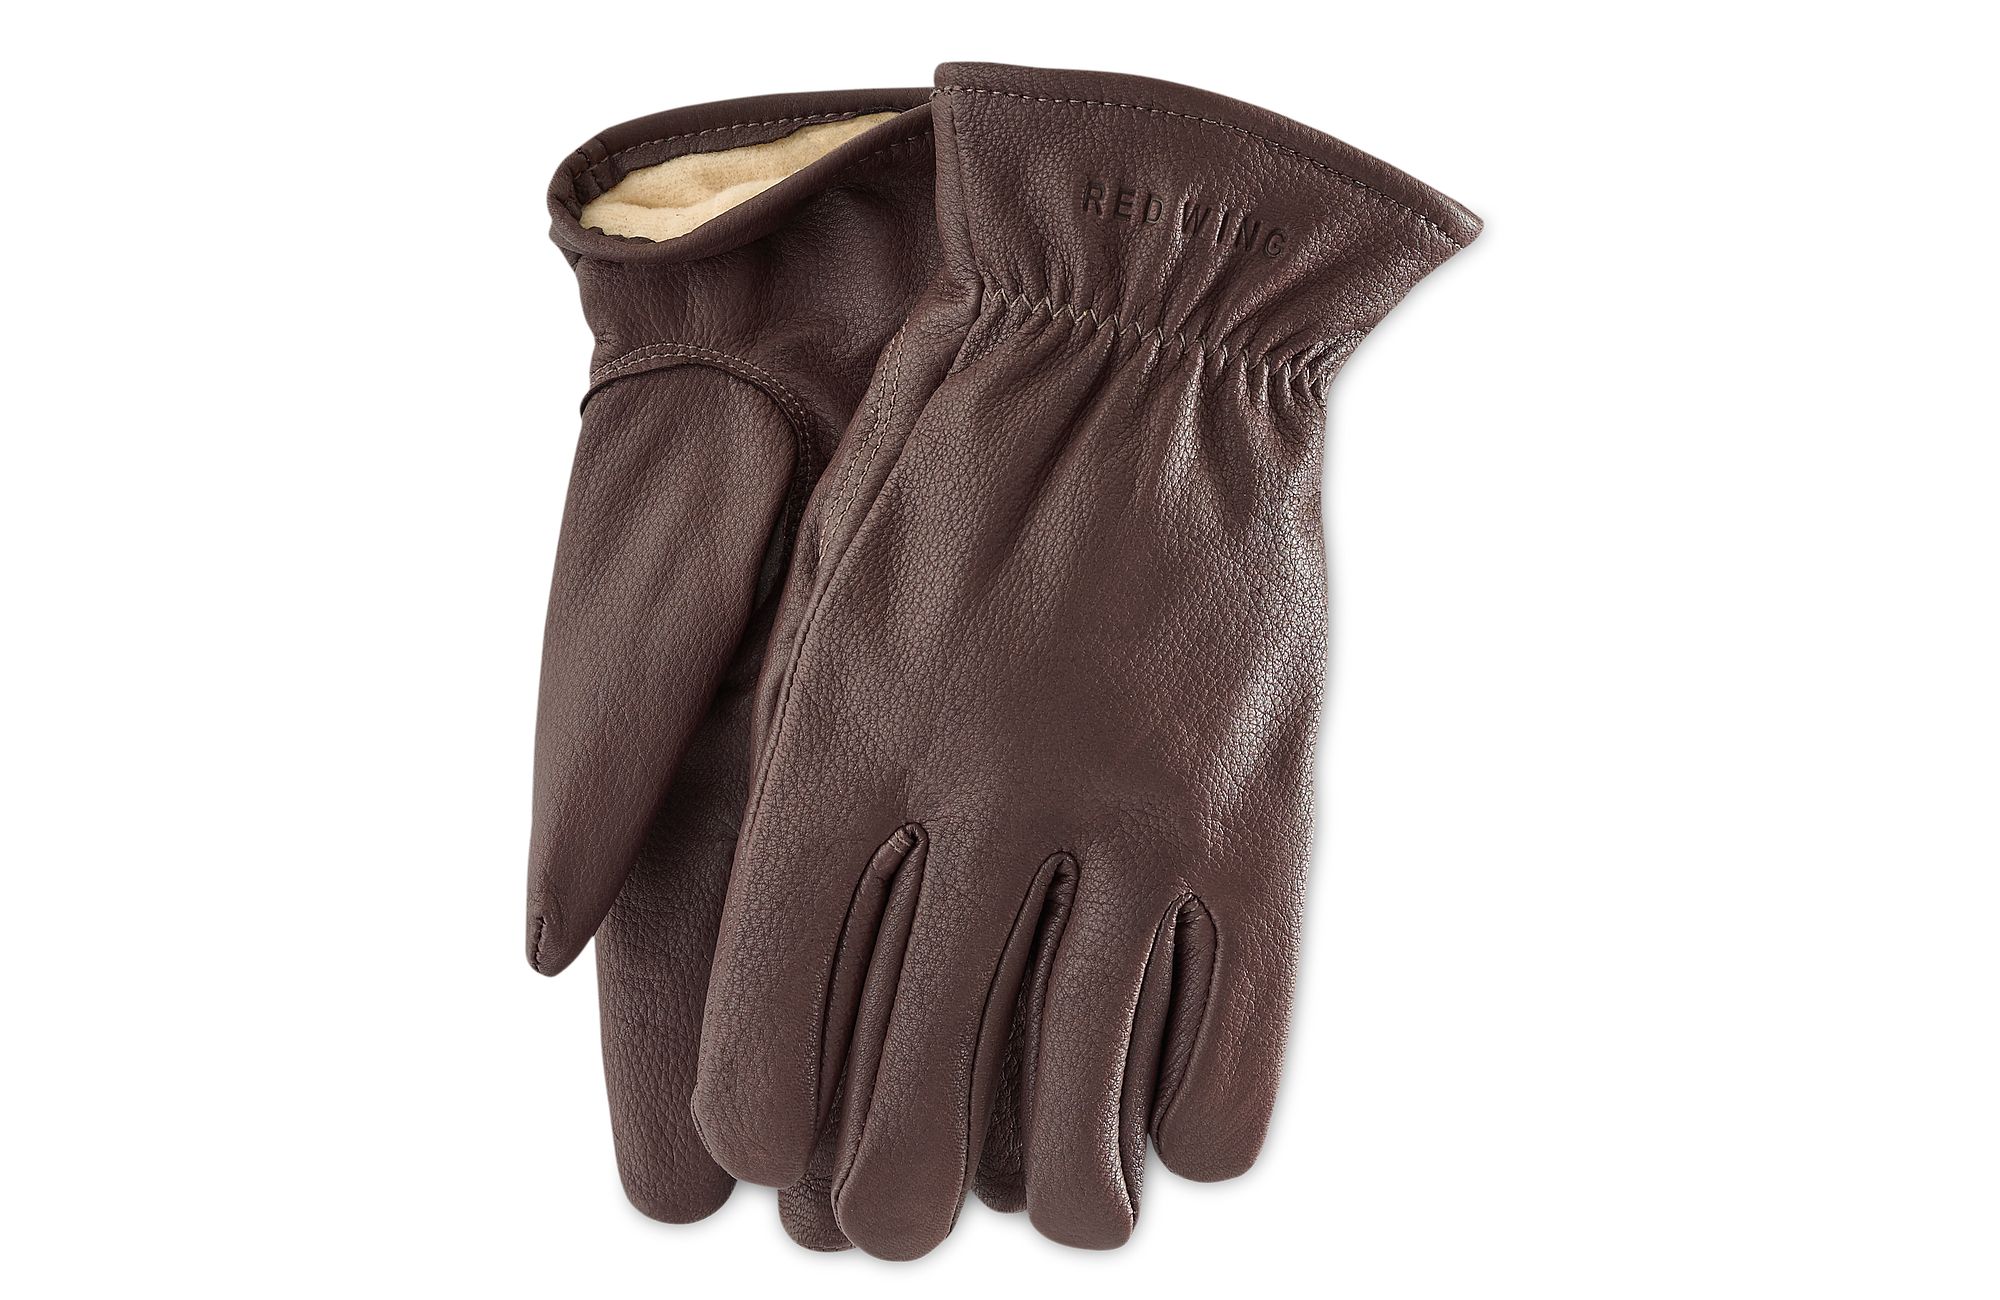 Landscaper Series Deerhide Leather Gloves